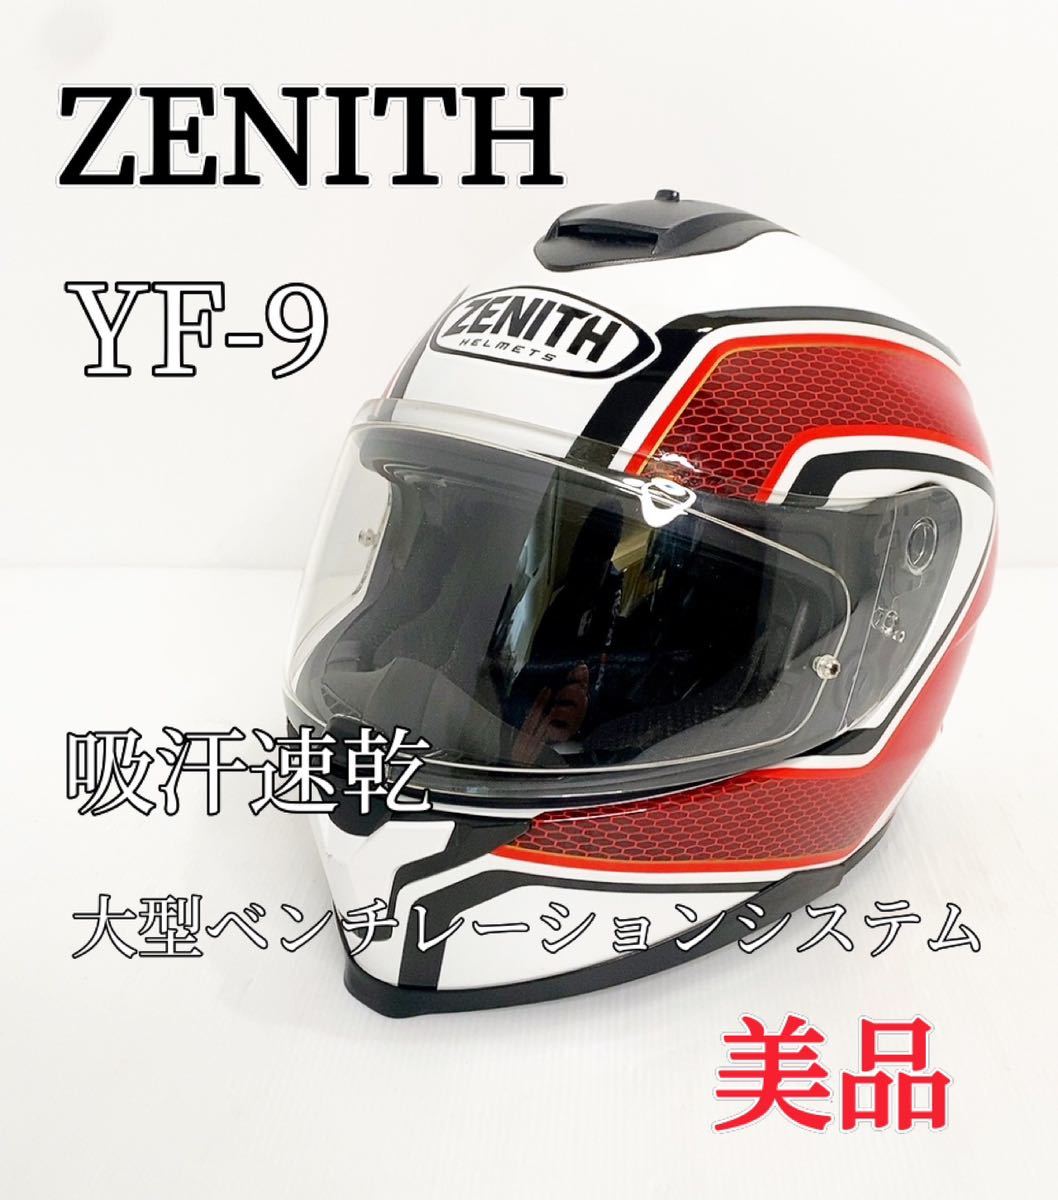 新しく着き ヤマハ YF-9 ミラーシールド ブルー YAMAHA ZENITH バイク ヘルメット用品